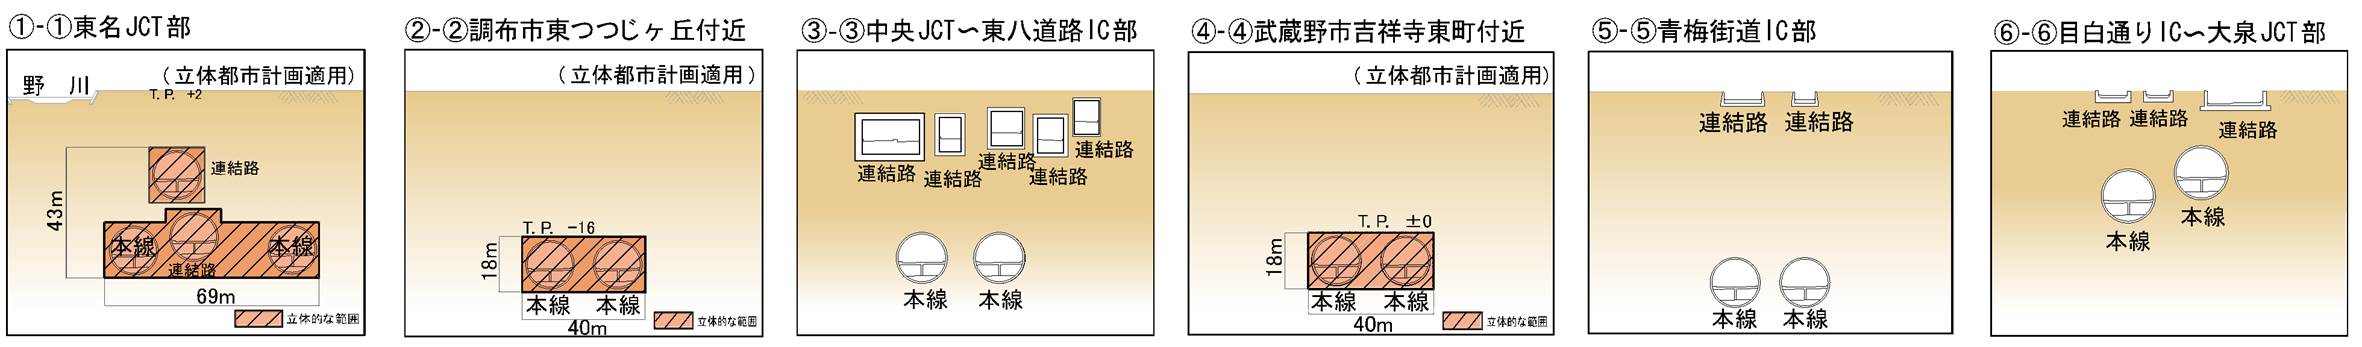 外環道東京区間　関越道～東名高速間の計画概要　断面図